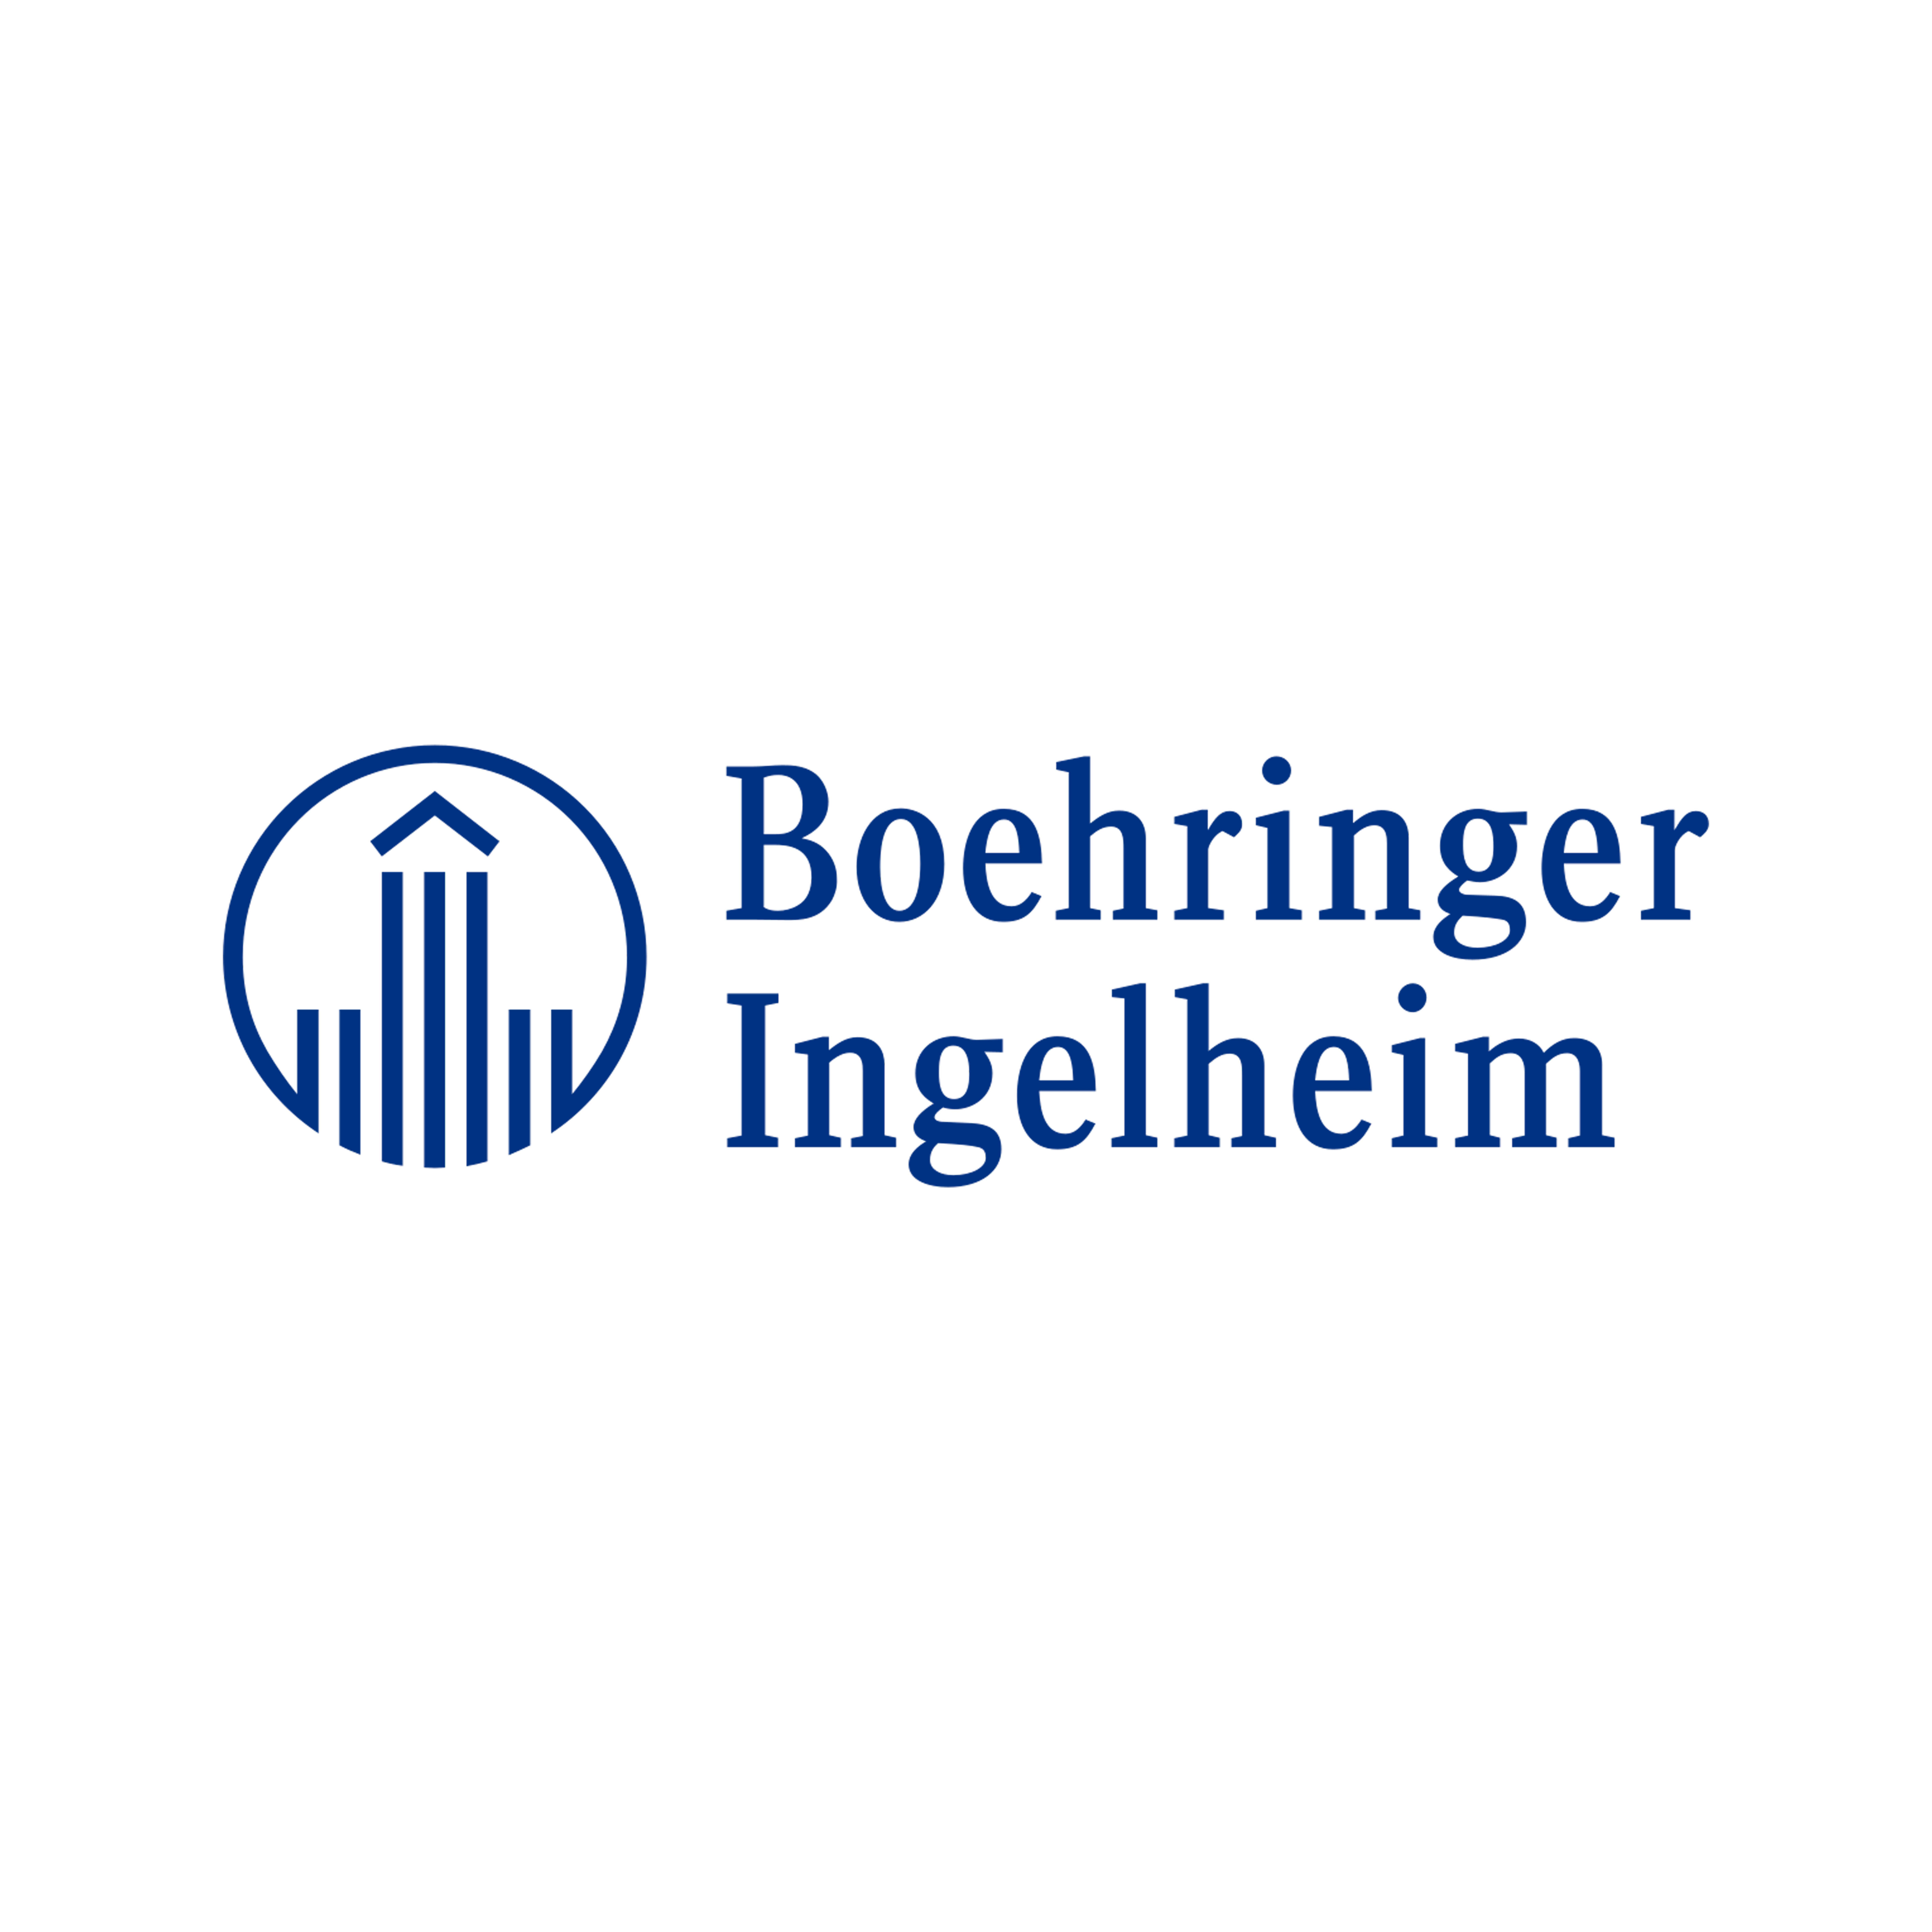 BDT_Logo_Boehringer-1.jpg